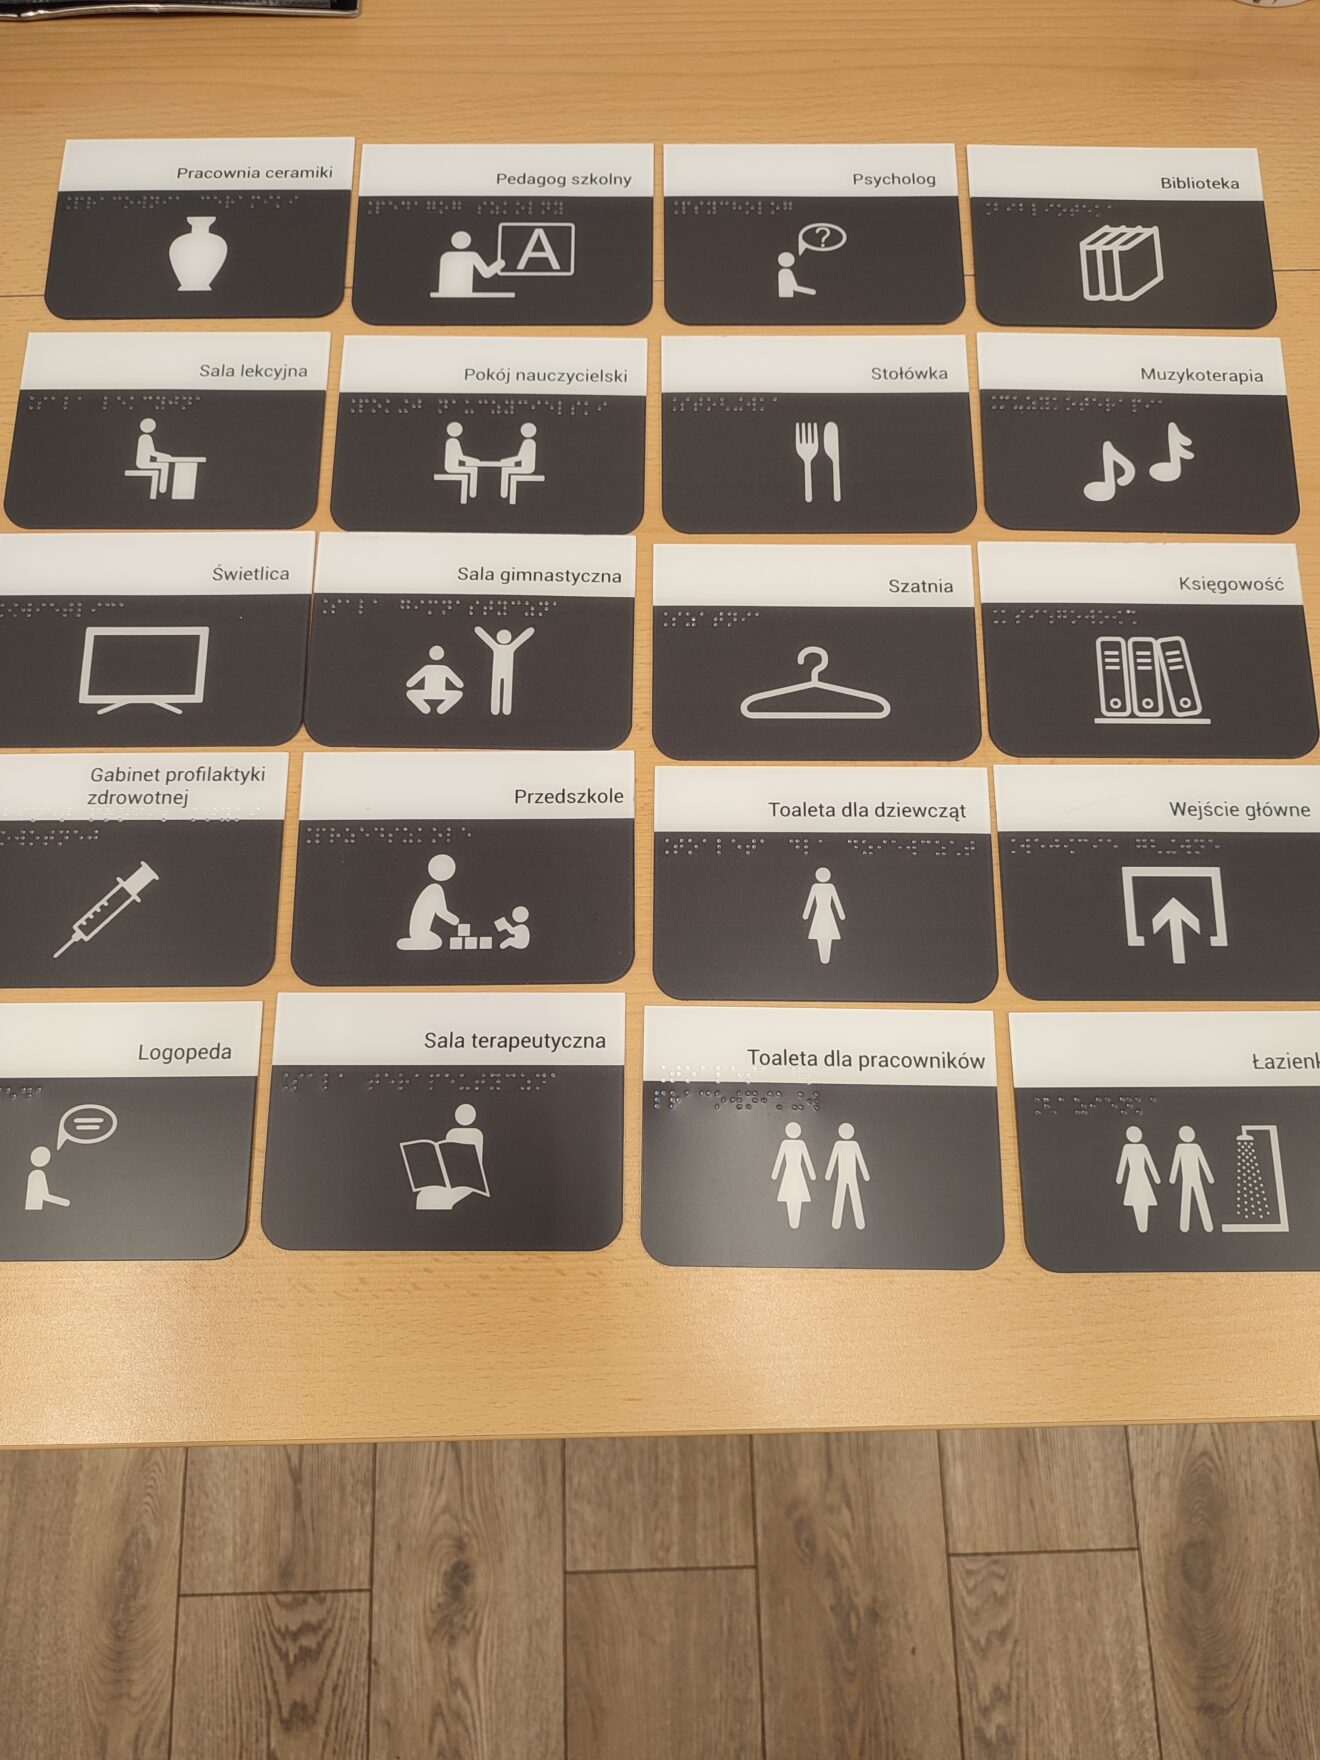 Czarnobiałe tabliczki z nazwami pomieszczeń szkolnych, alfabetem Braille’a i piktogramami